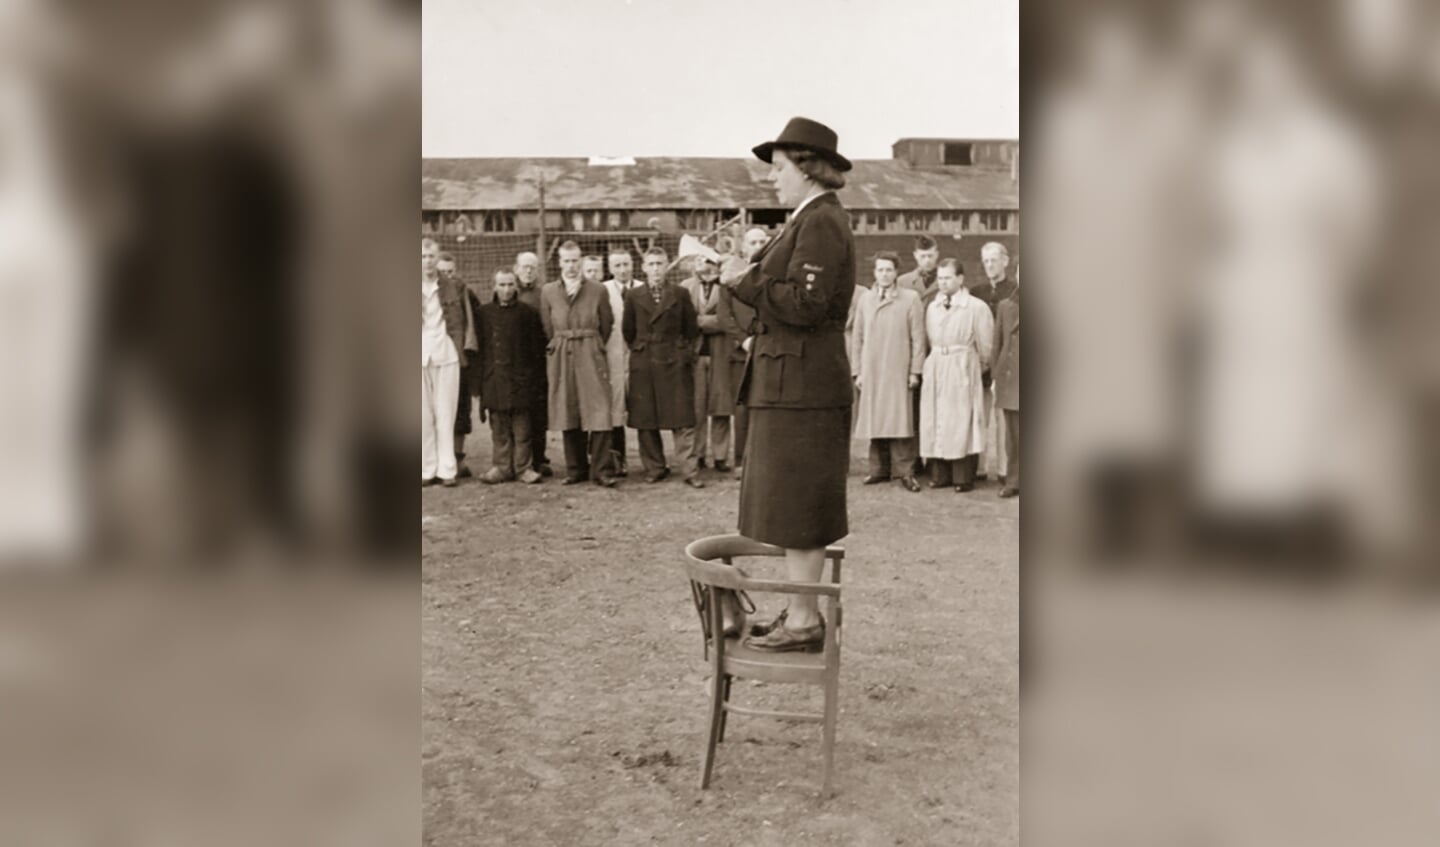 Leusden, 19 april 1945 Loes van Overeem is tijdens de Tweede Wereldoorlog eerst als verpleegster werkzaam bij het Rode Kruis, later wordt ze hoofd van de afdeling Speciale Hulpverlening. Omdat Van Overeem toegang heeft tot de bevelhebber van de SD en